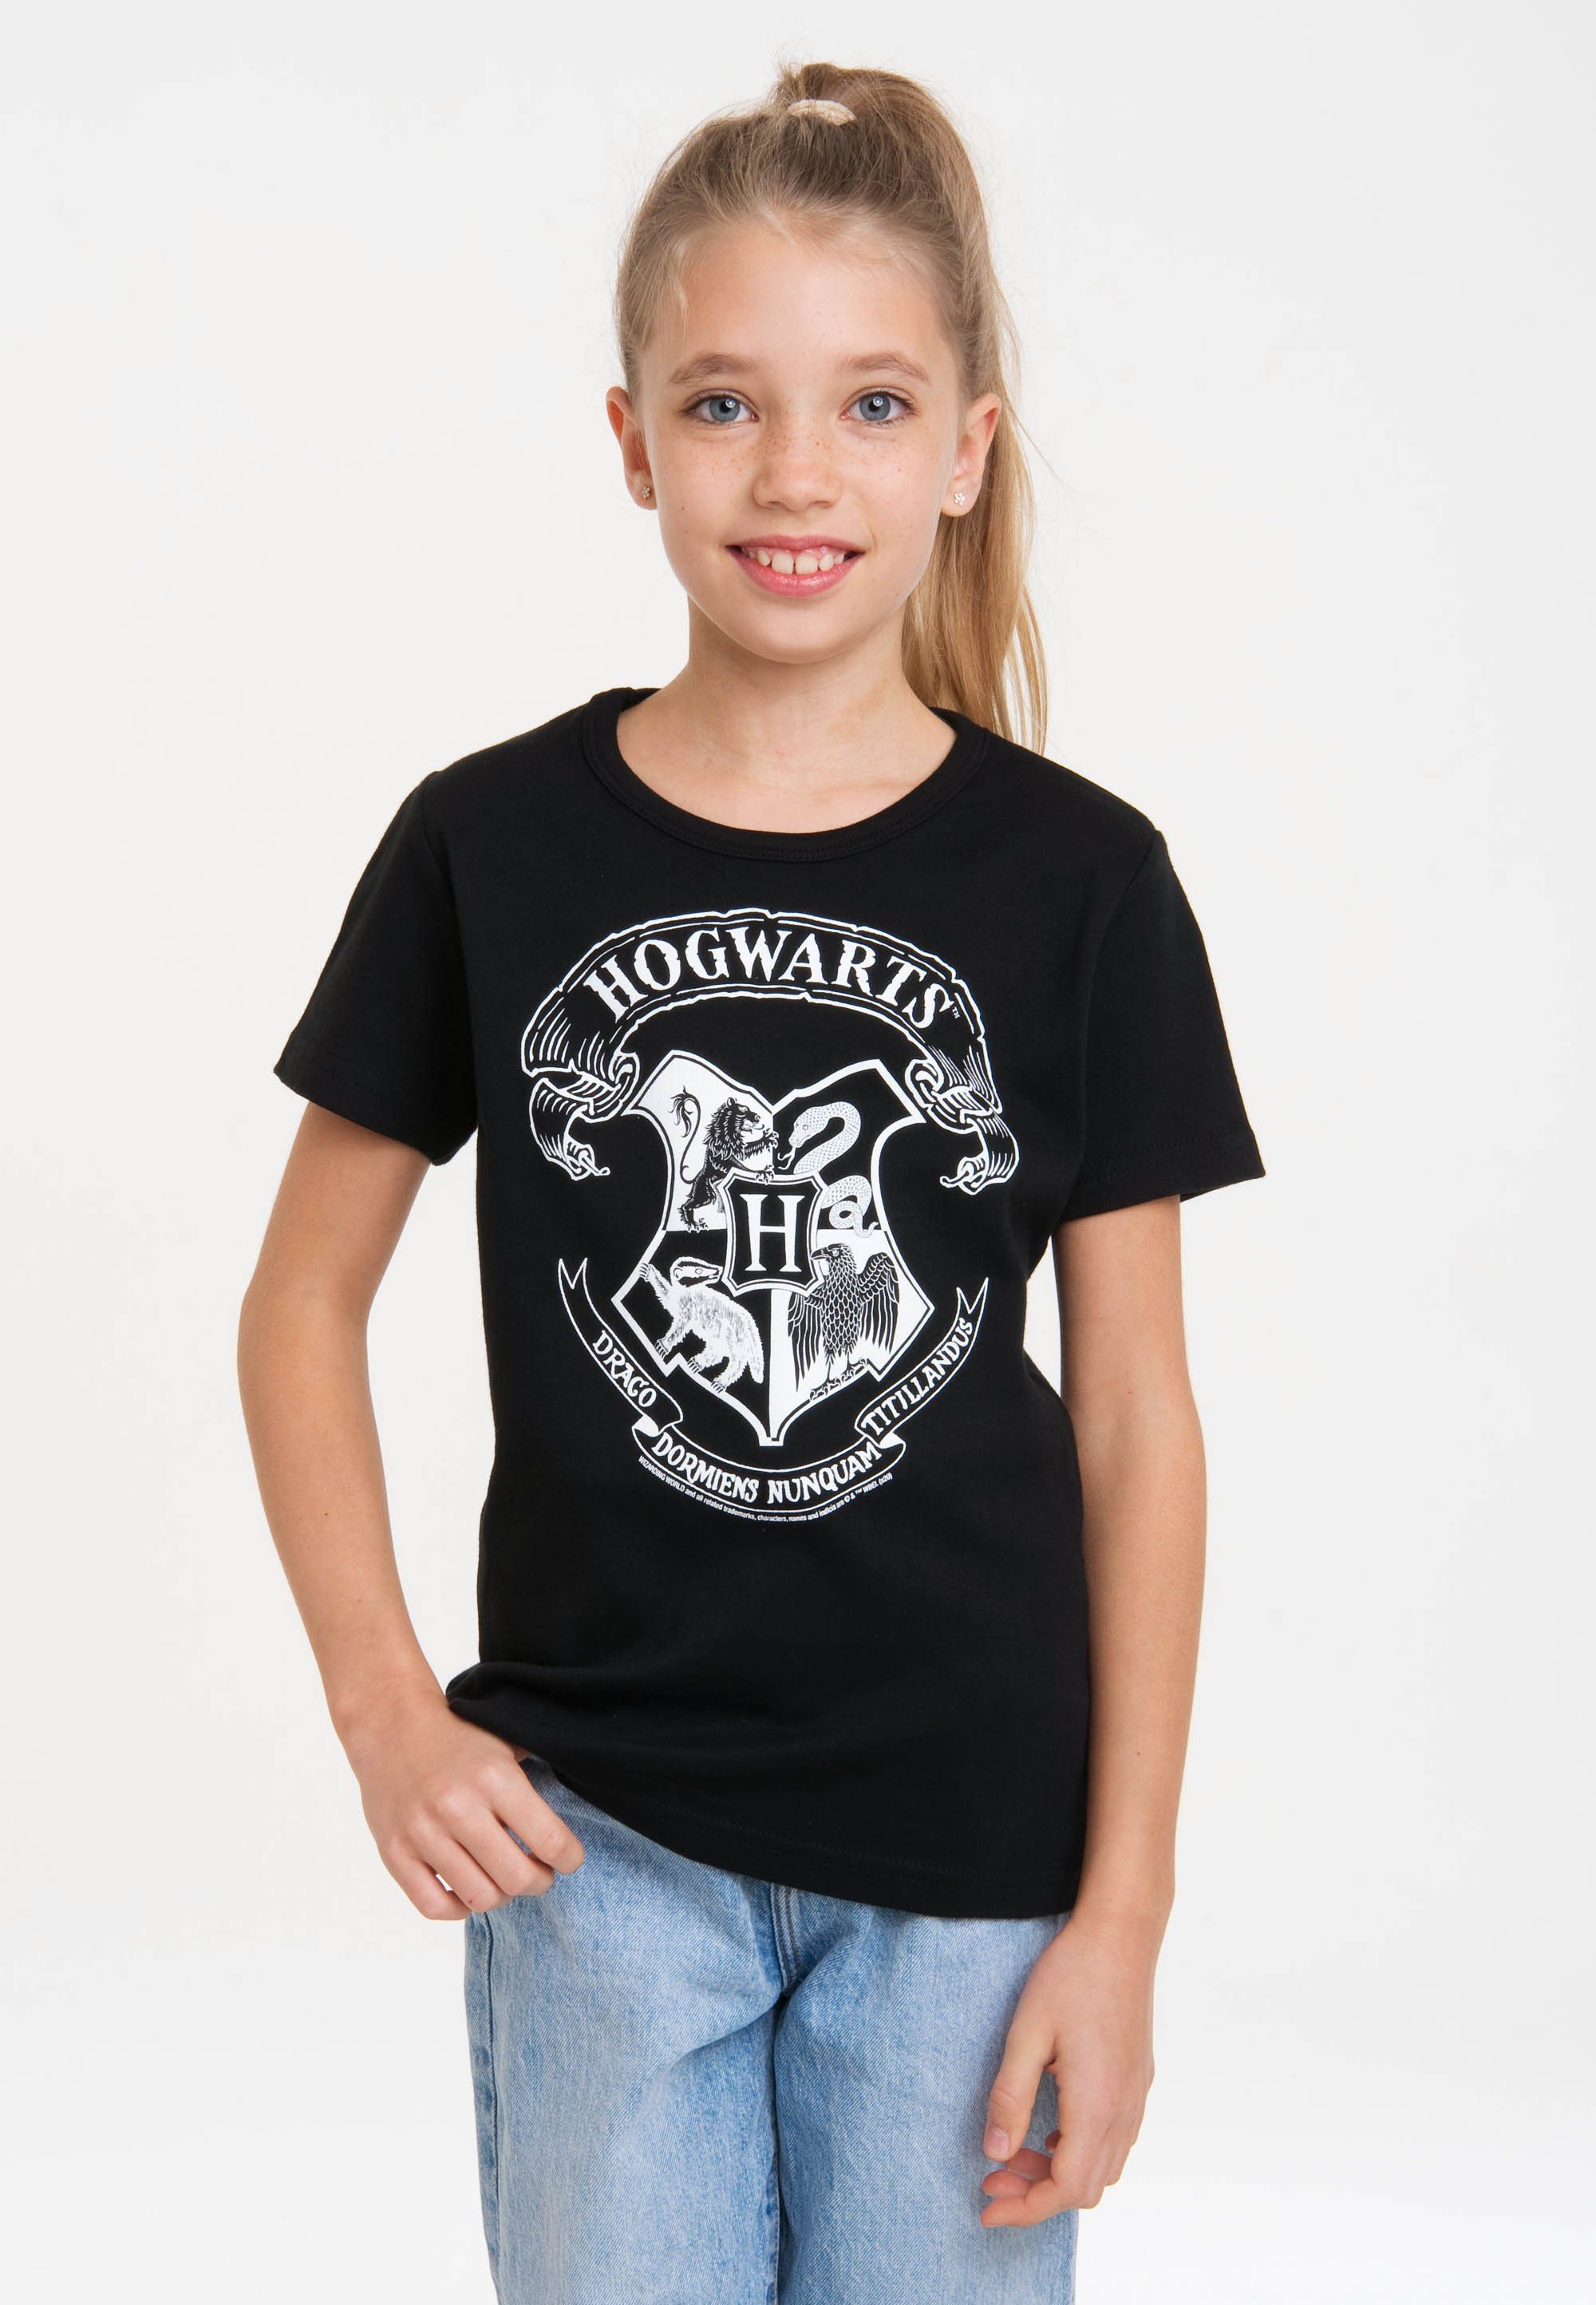 LOGOSHIRT T-Shirt Harry Potter - (Weiß) mit Originaldesign Logo Hogwarts lizenziertem